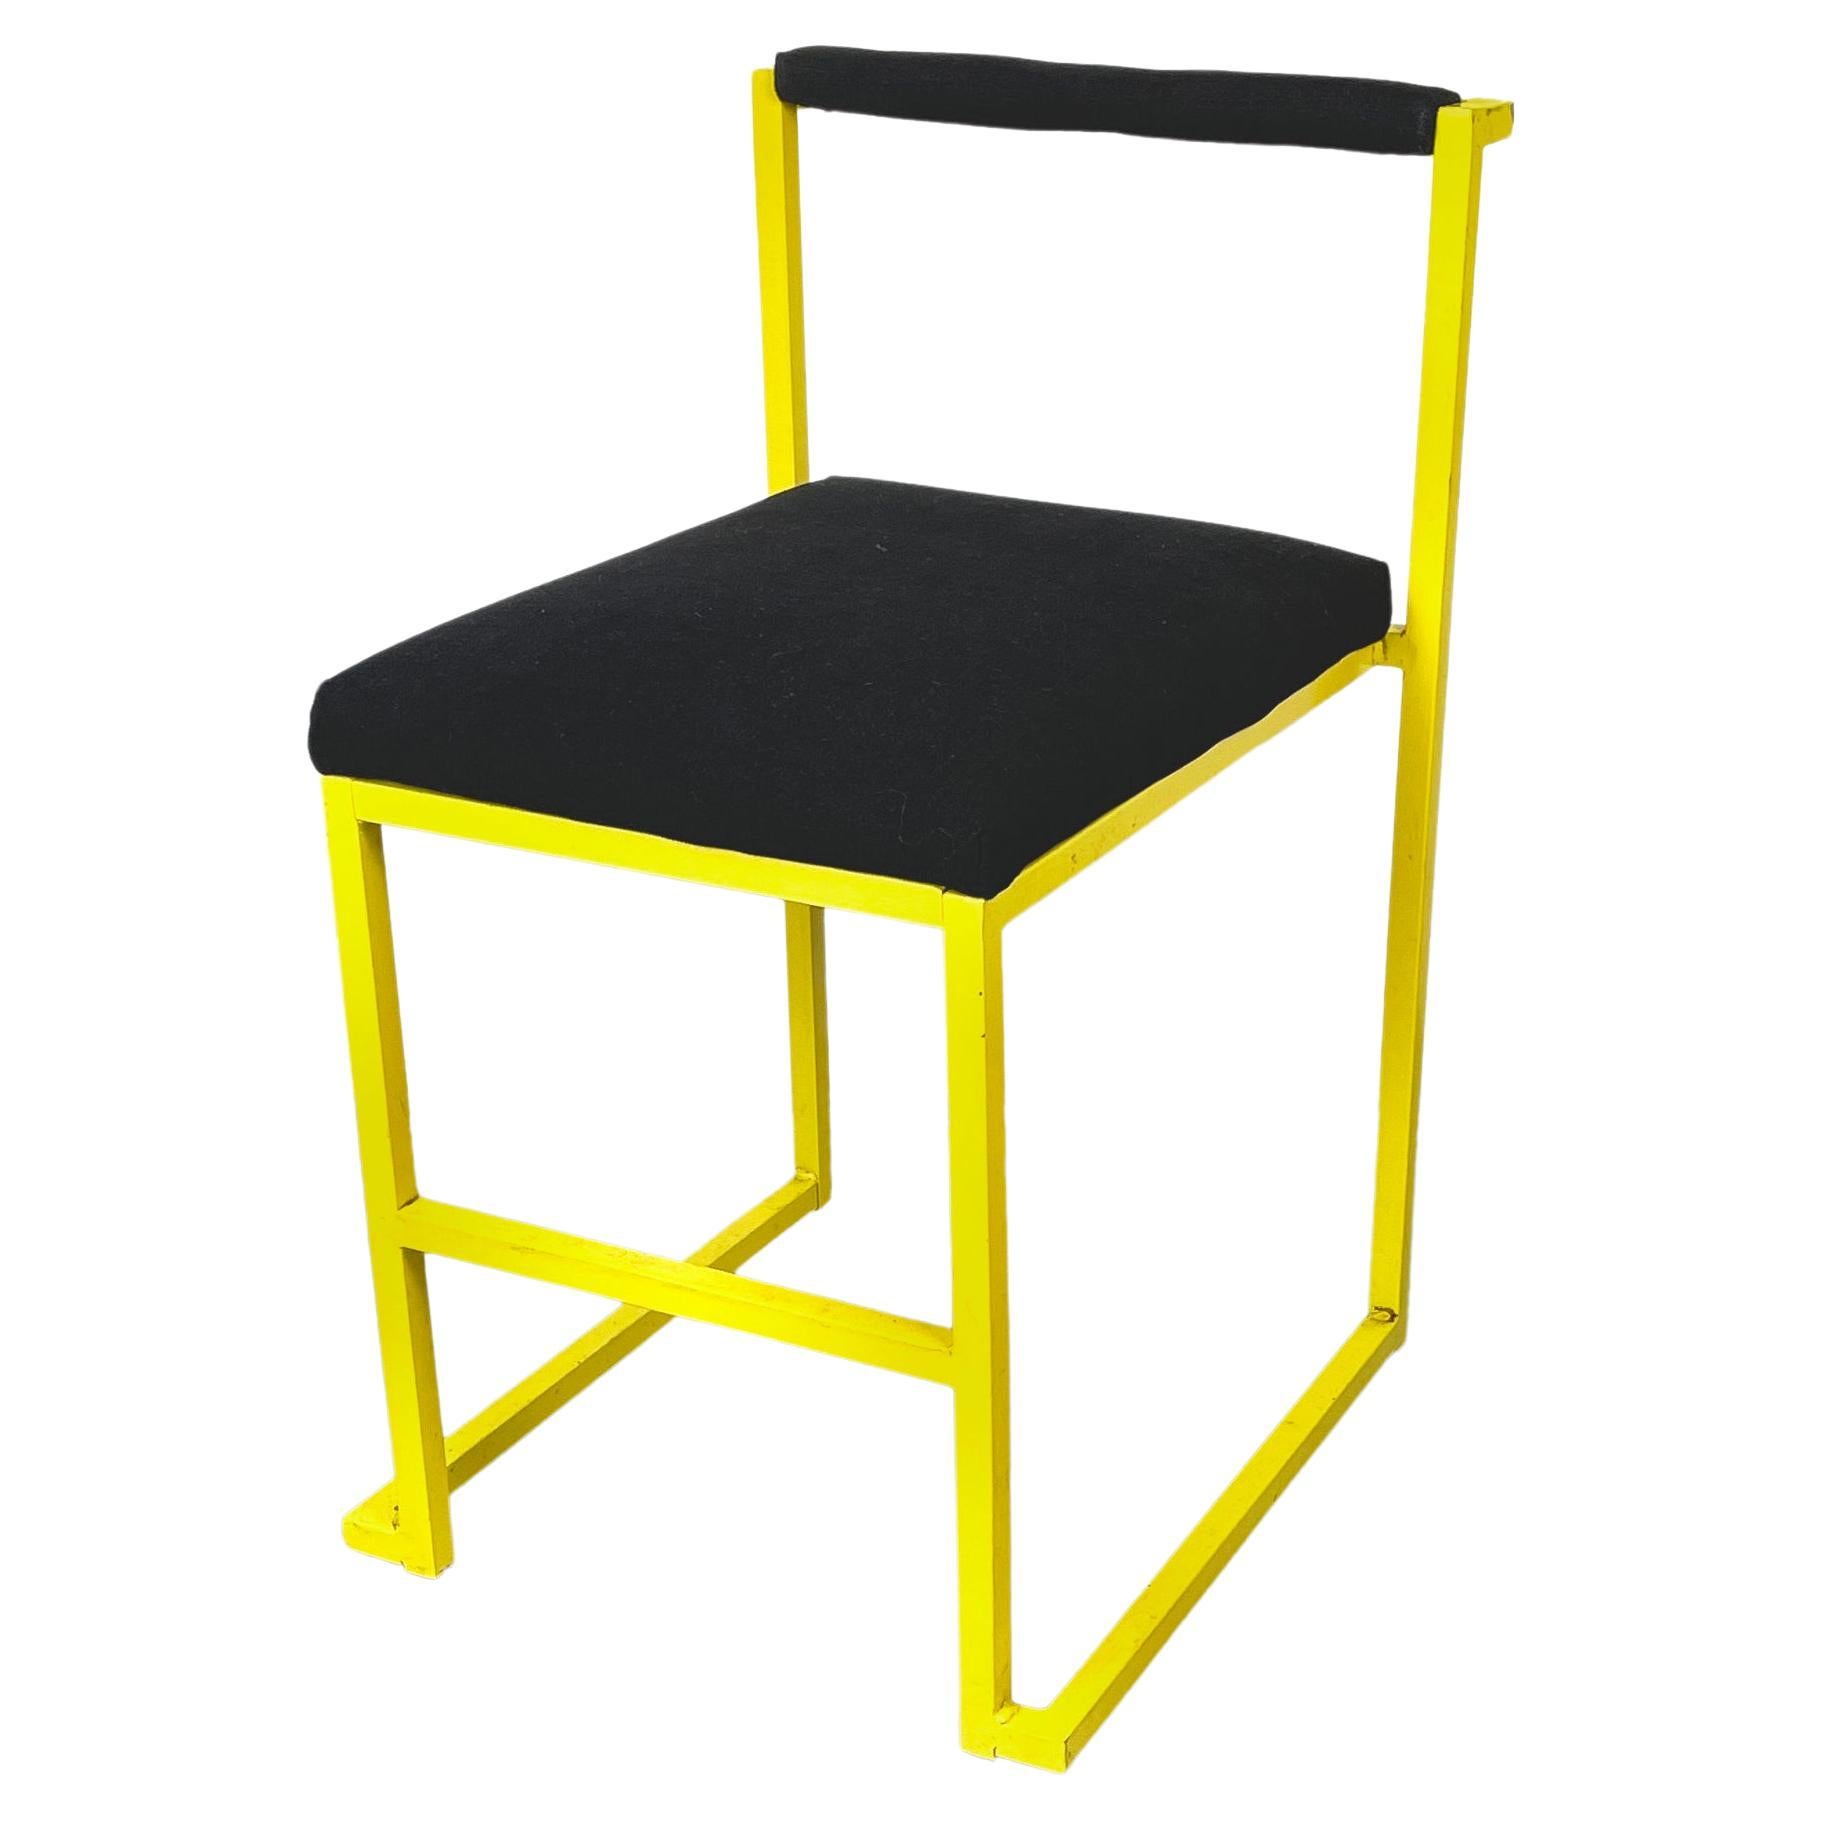 Italienisch modern Rechteckiger Stuhl mit schwarzem Stoff und gelbem Metall, 1980er Jahre